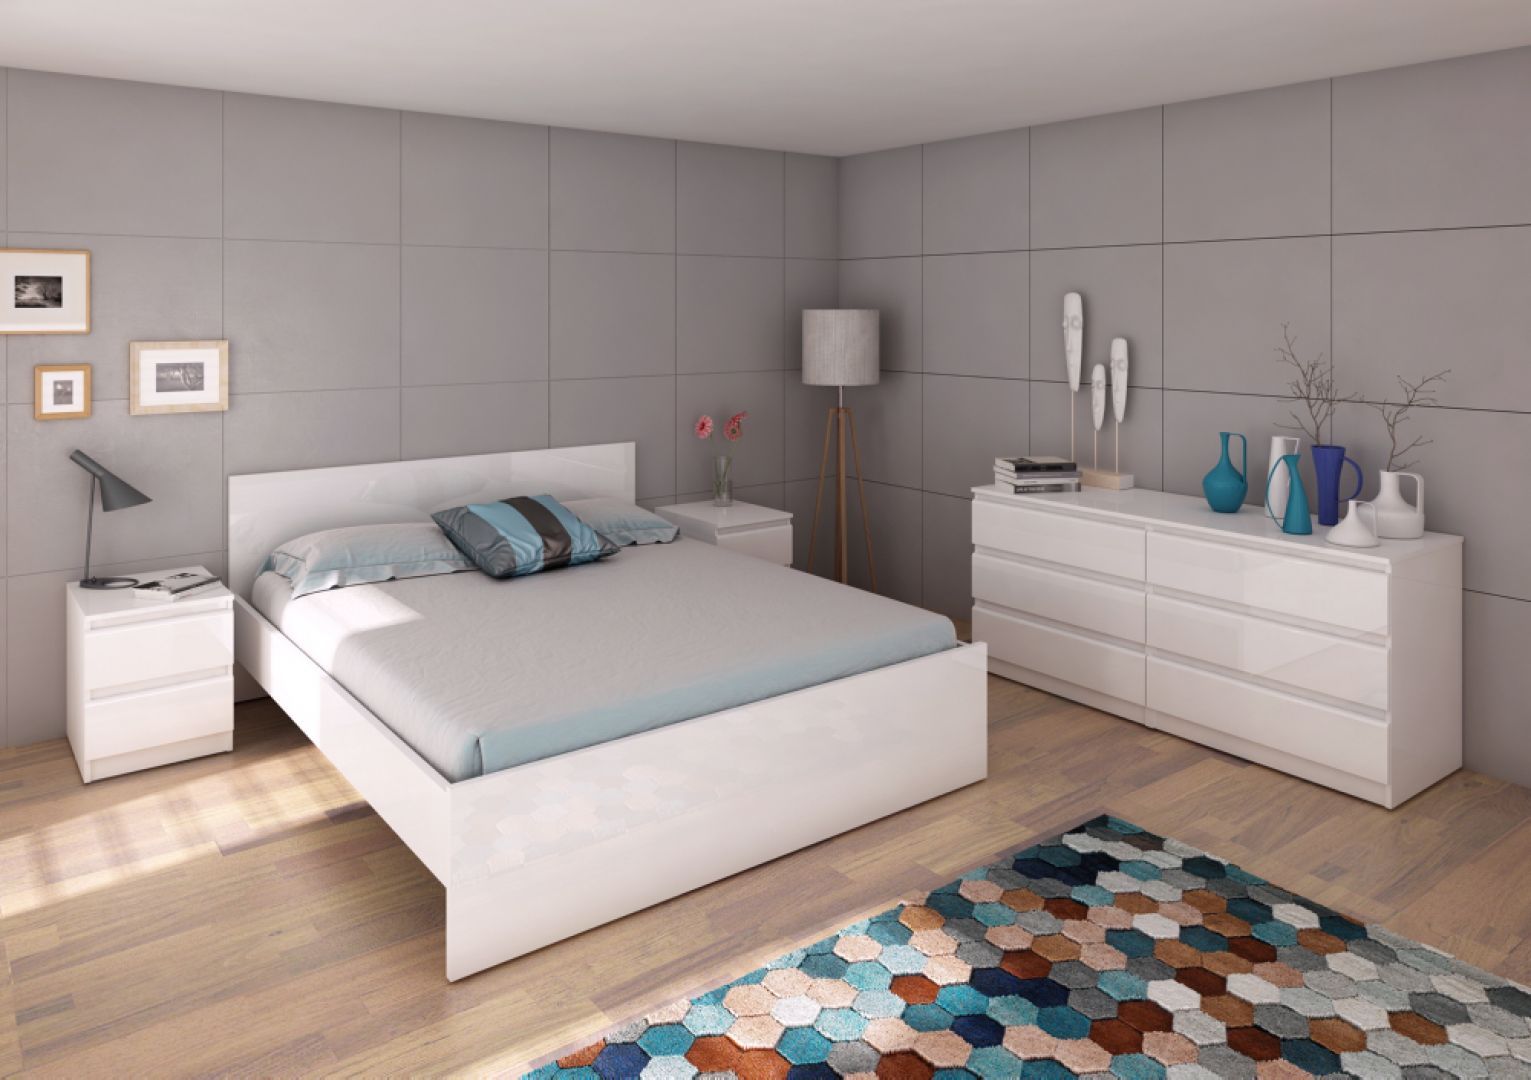 Sypialnia wyposażona w białe, lakierowane meble: łóżko, komodę i szafkę nocną. Fot. Naia